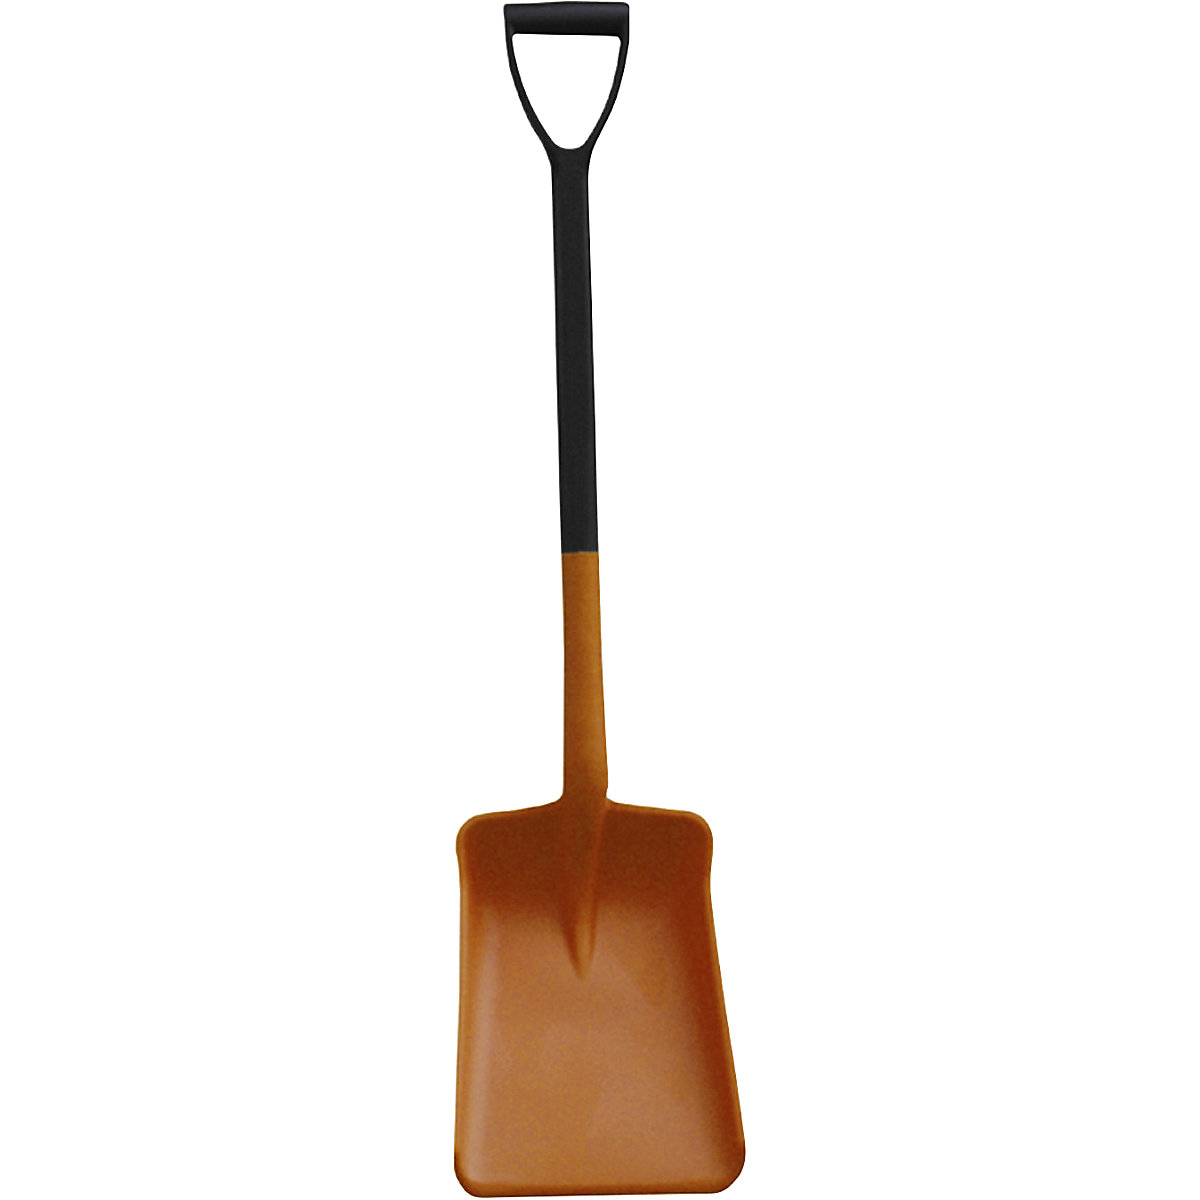 Universal shovel made of PP – CEMO